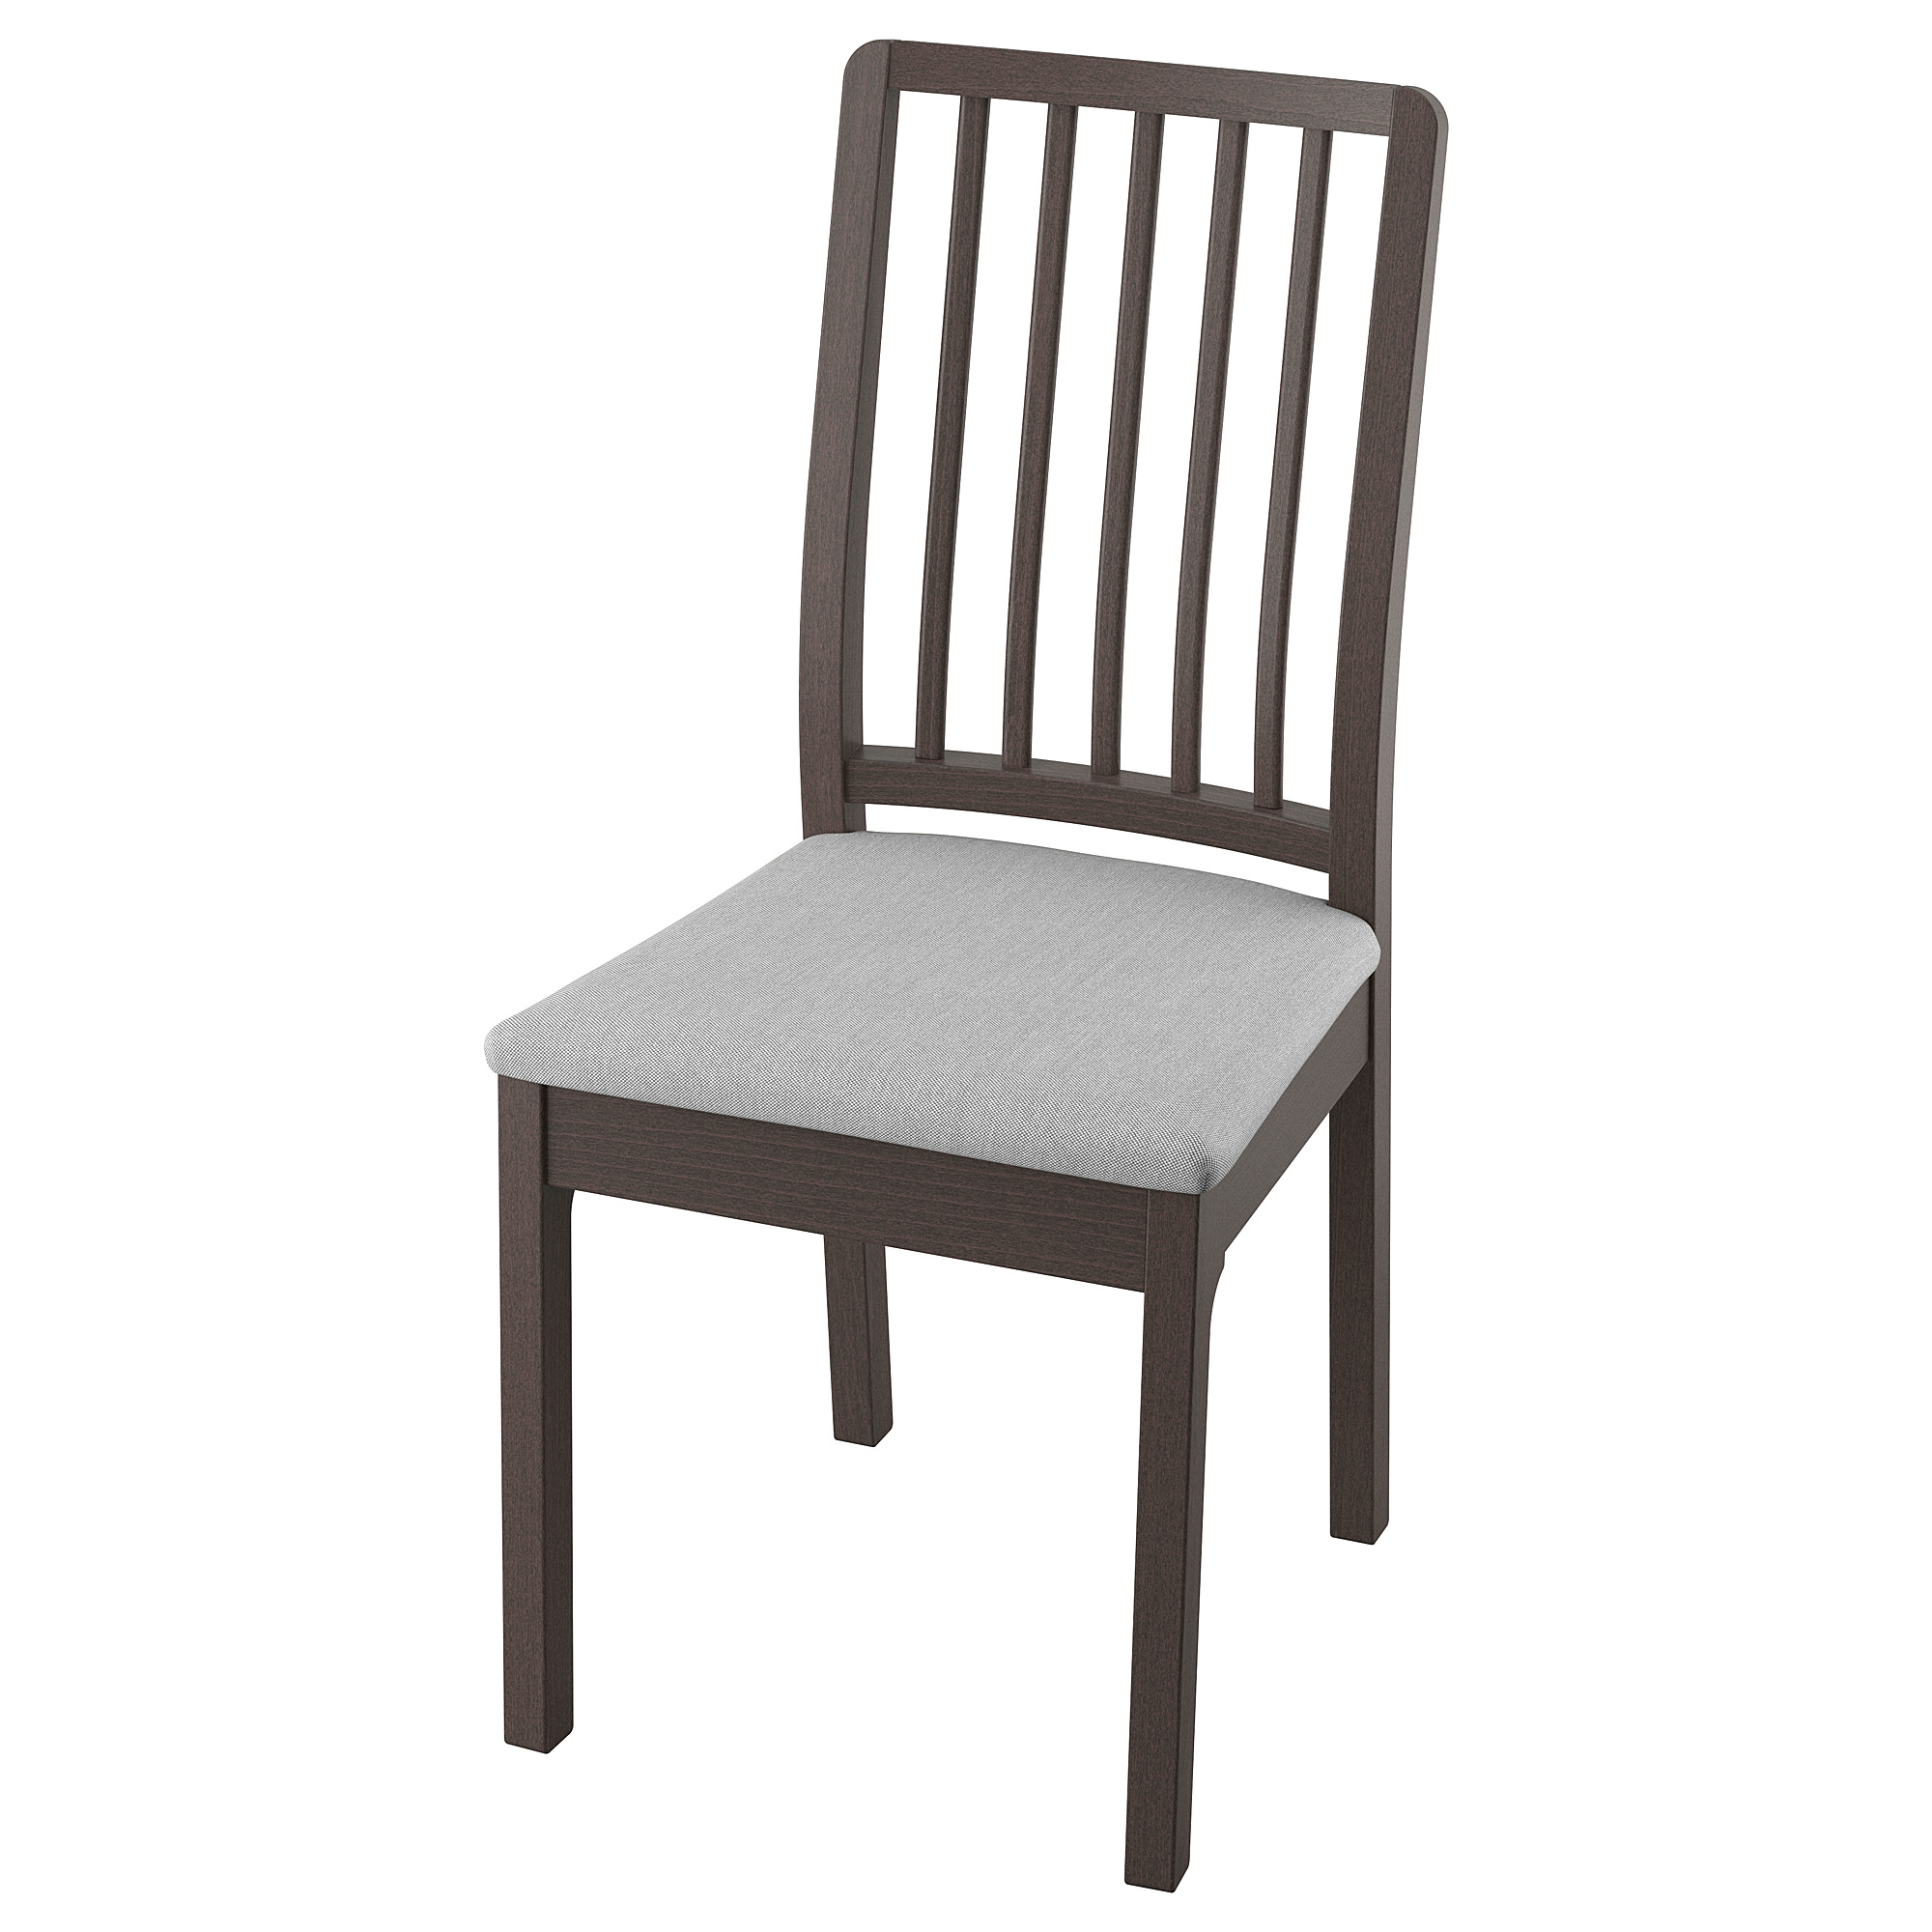 EKEDALEN chair